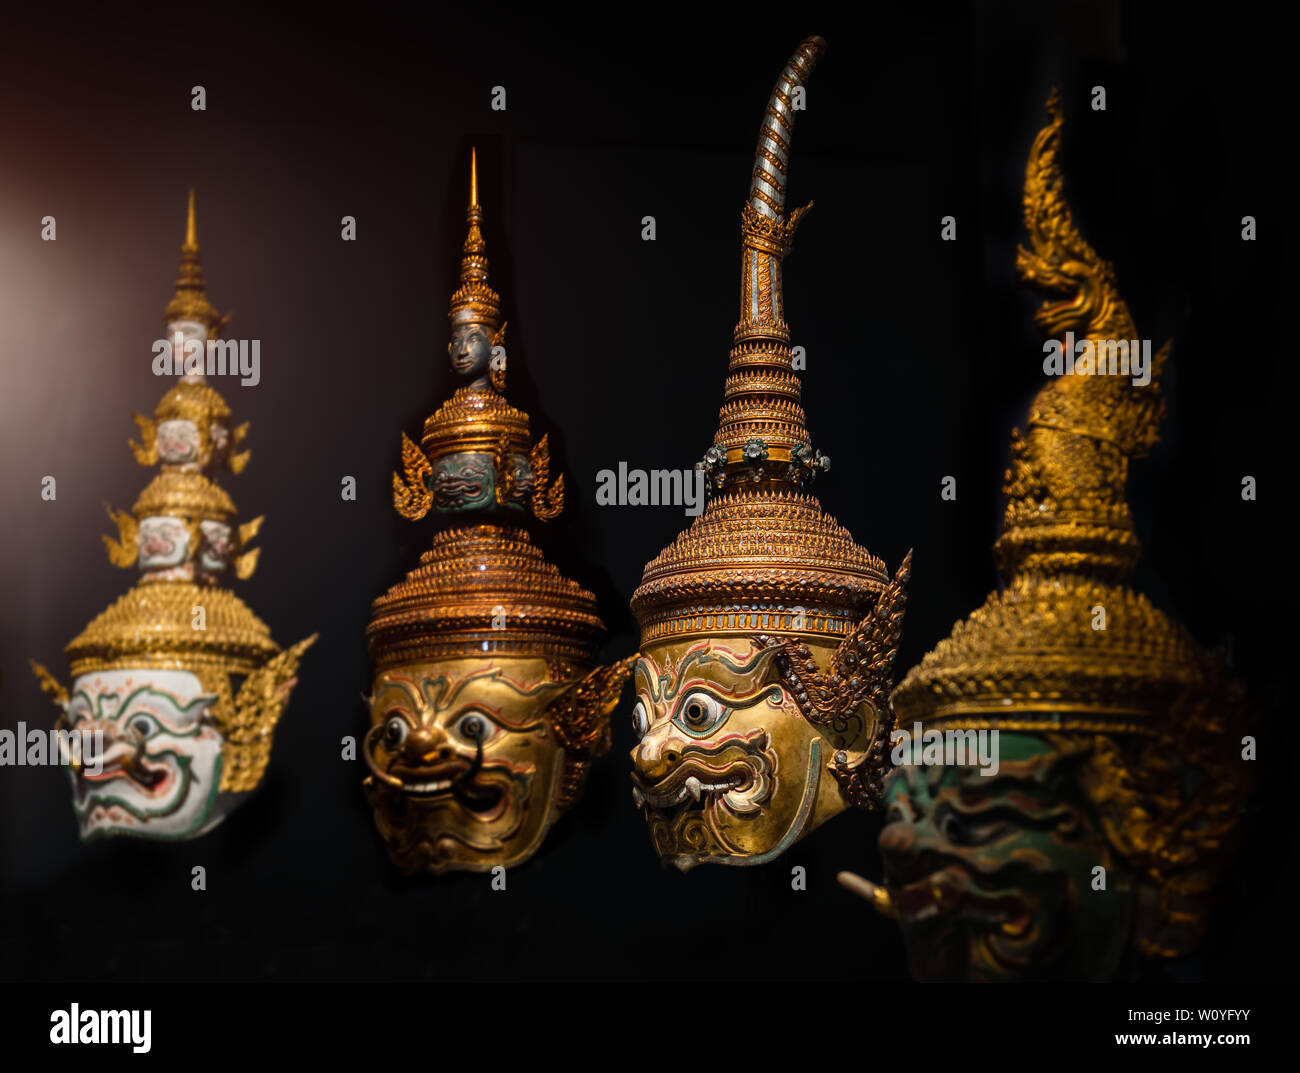 Artesanía tailandesa cabeza máscara personaje de ramayana épico para tailandés khon arte colección de baile con fondo oscuro y baja iluminación. Foto de stock